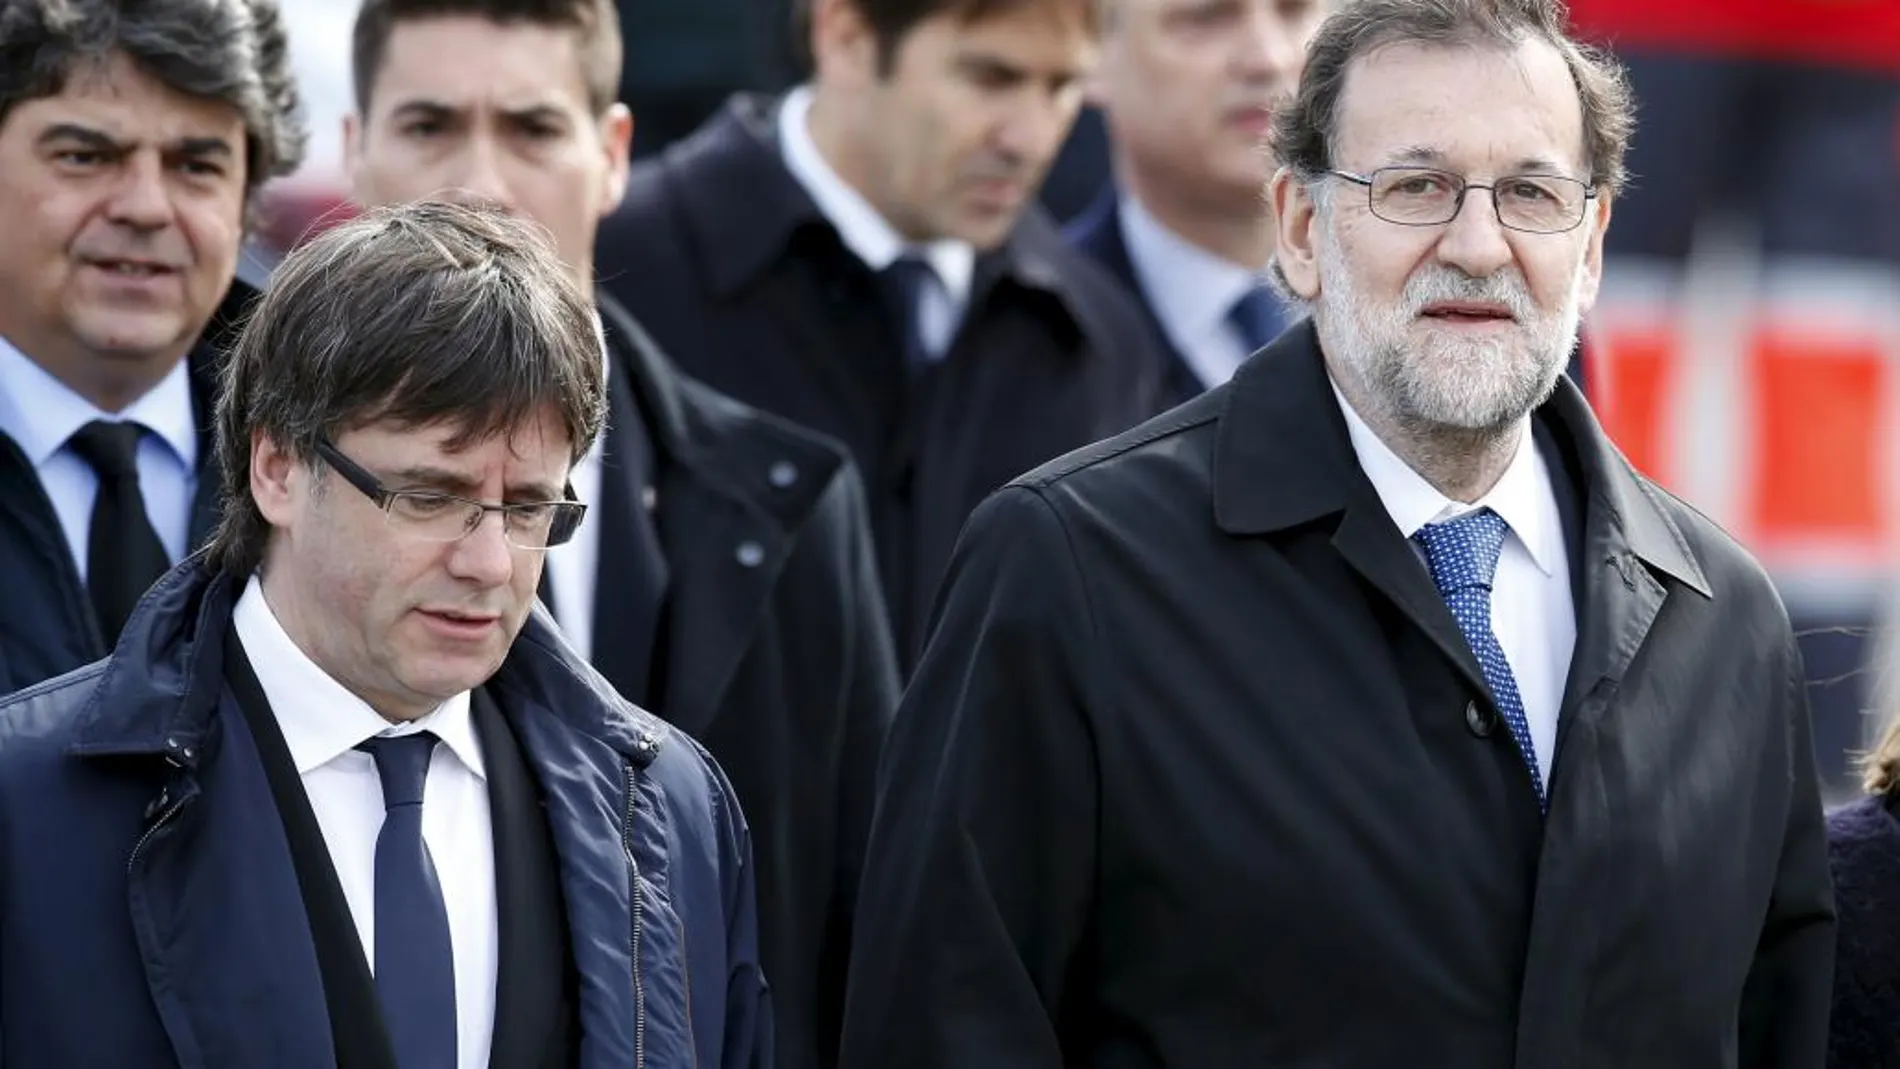 El presidente de la Generalitat, Carles Puigdemont, mantiene contactos con la del presidente del Gobierno, Mariano Rajoy